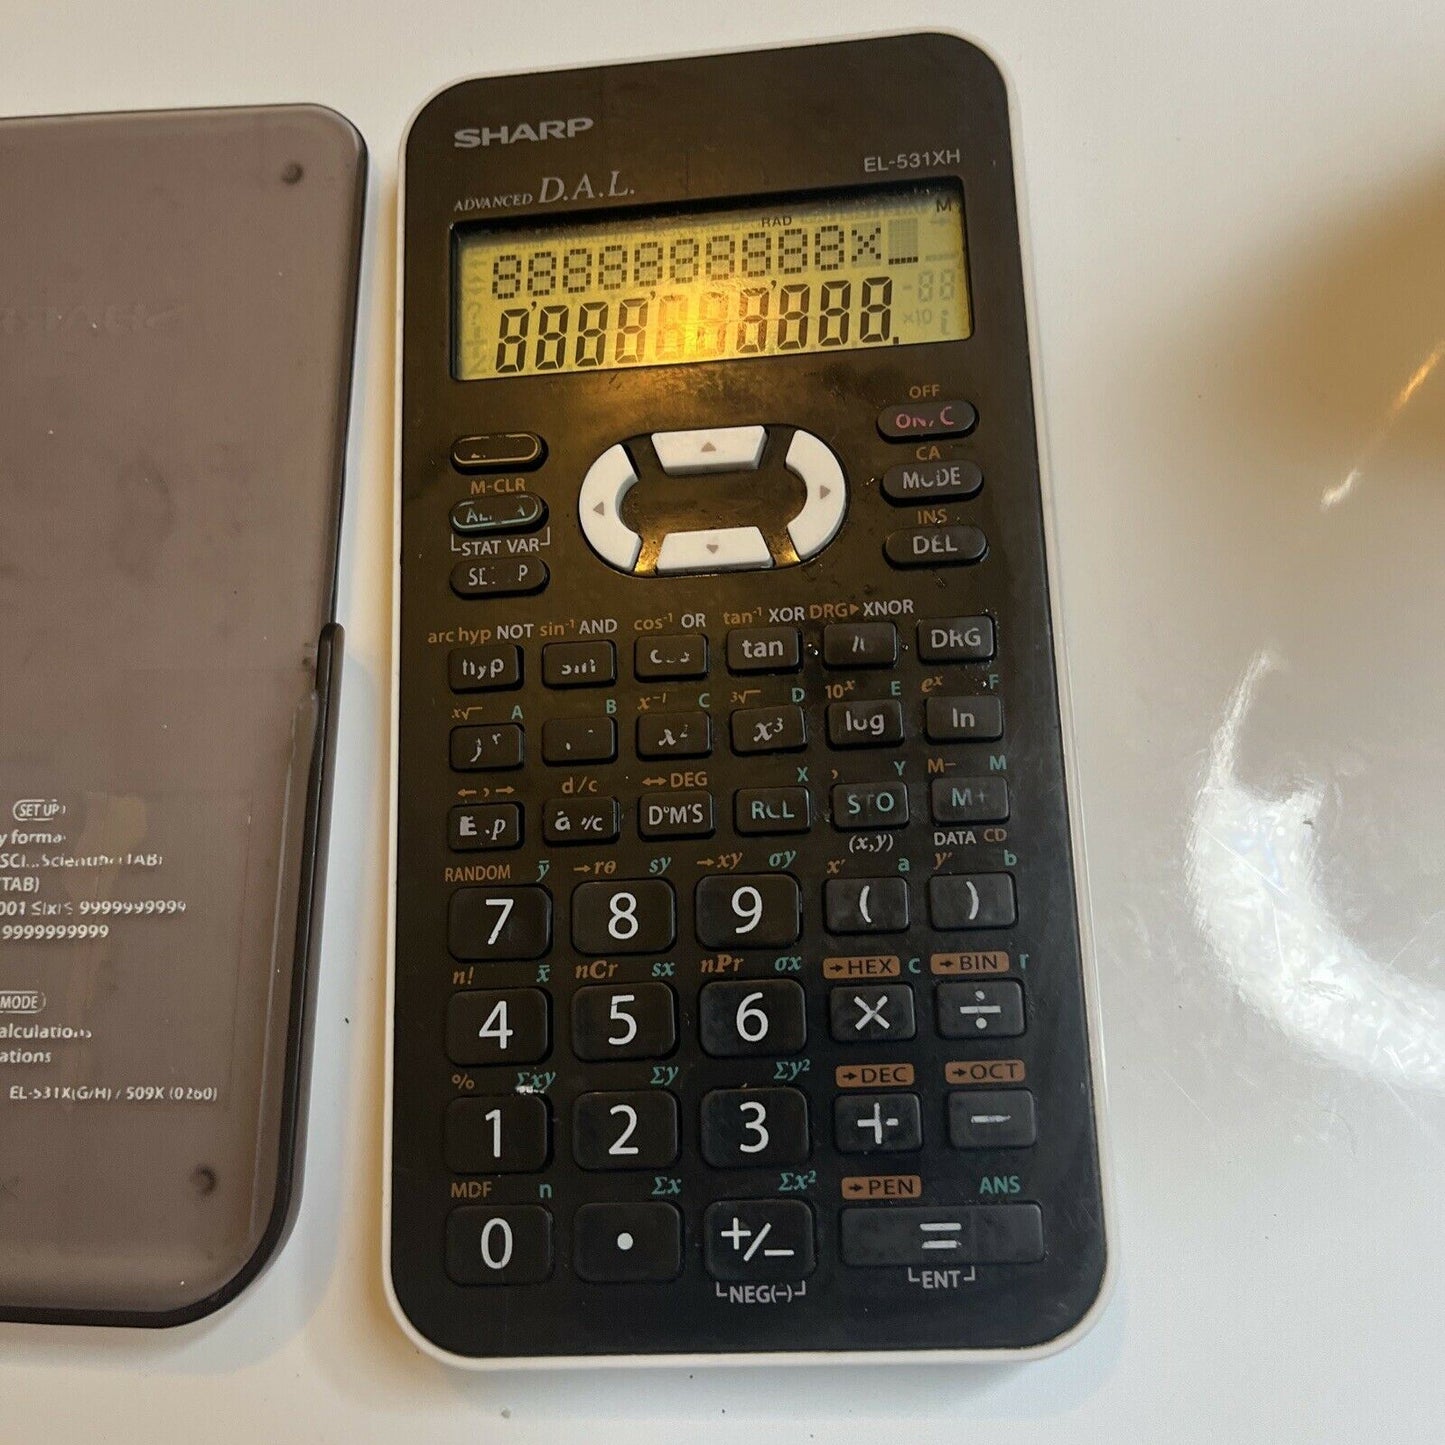 Sharp EL-531XH Scientific Calculator Advanced D.A.L.